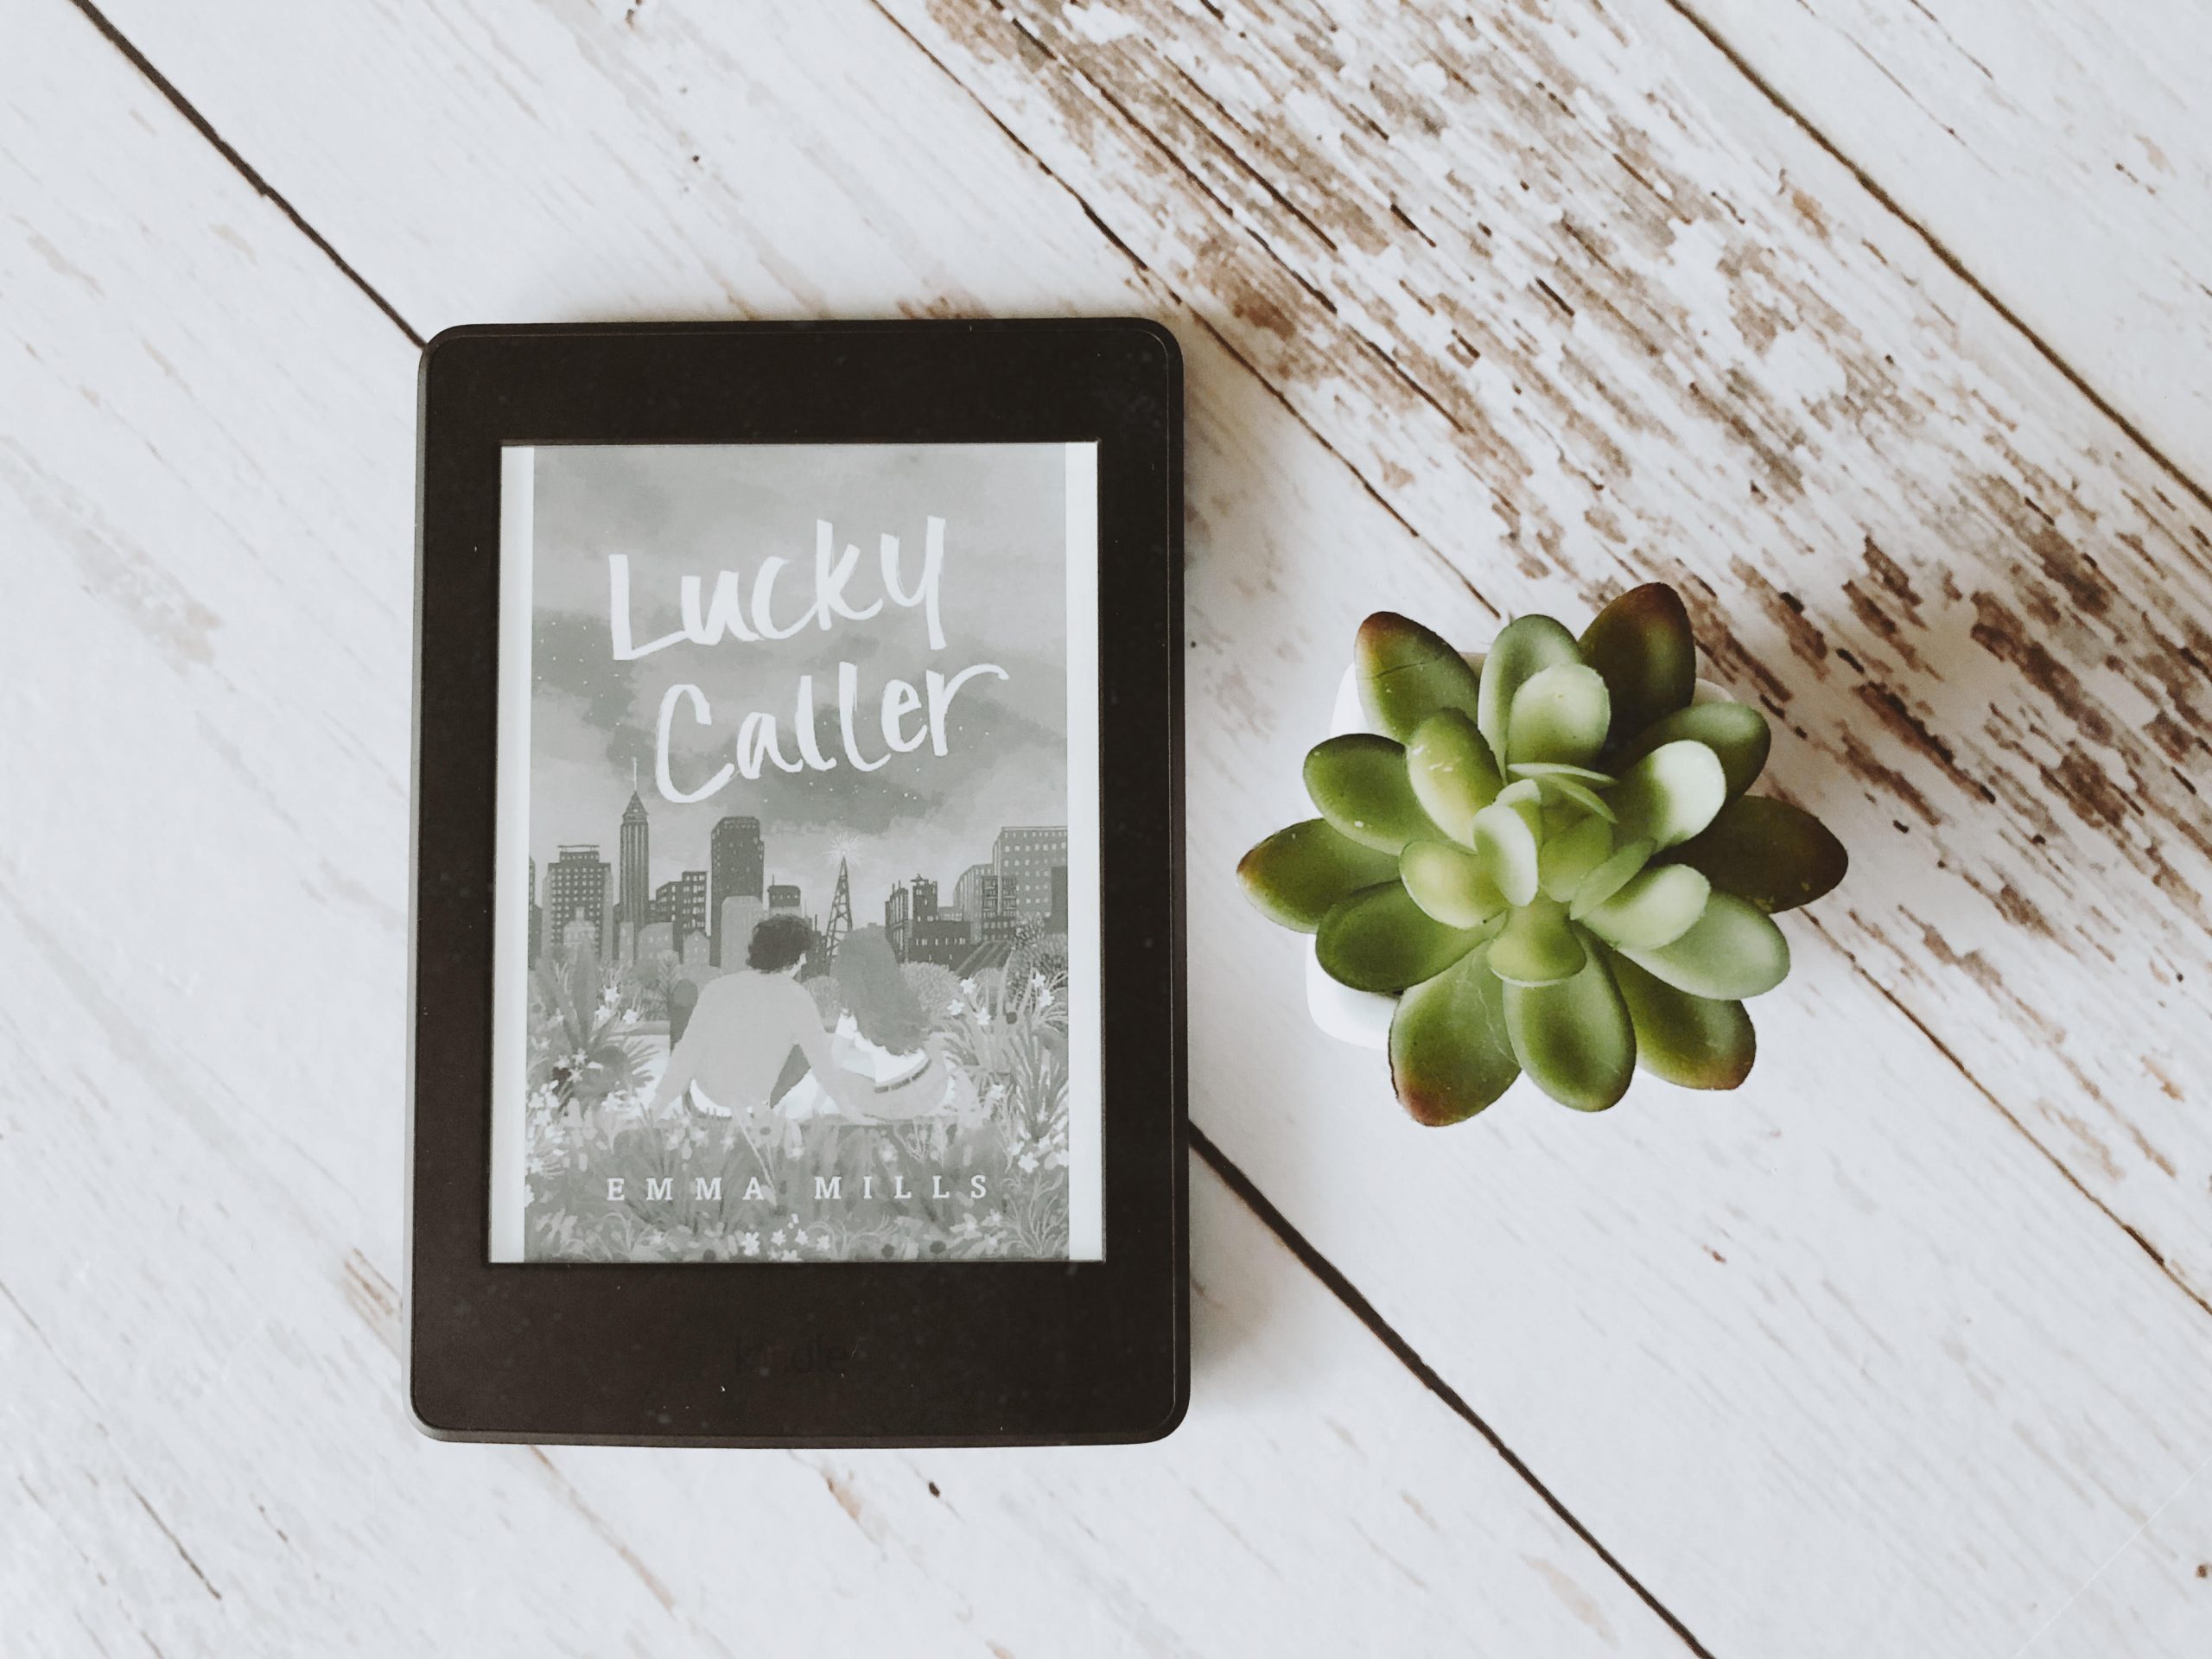 Foto de um Kindle exibindo a capa de Lucky Caller de Emma Mills à esquerda e uma planta suculenta à direita. Ao fundo, uma textura de madeira branca.